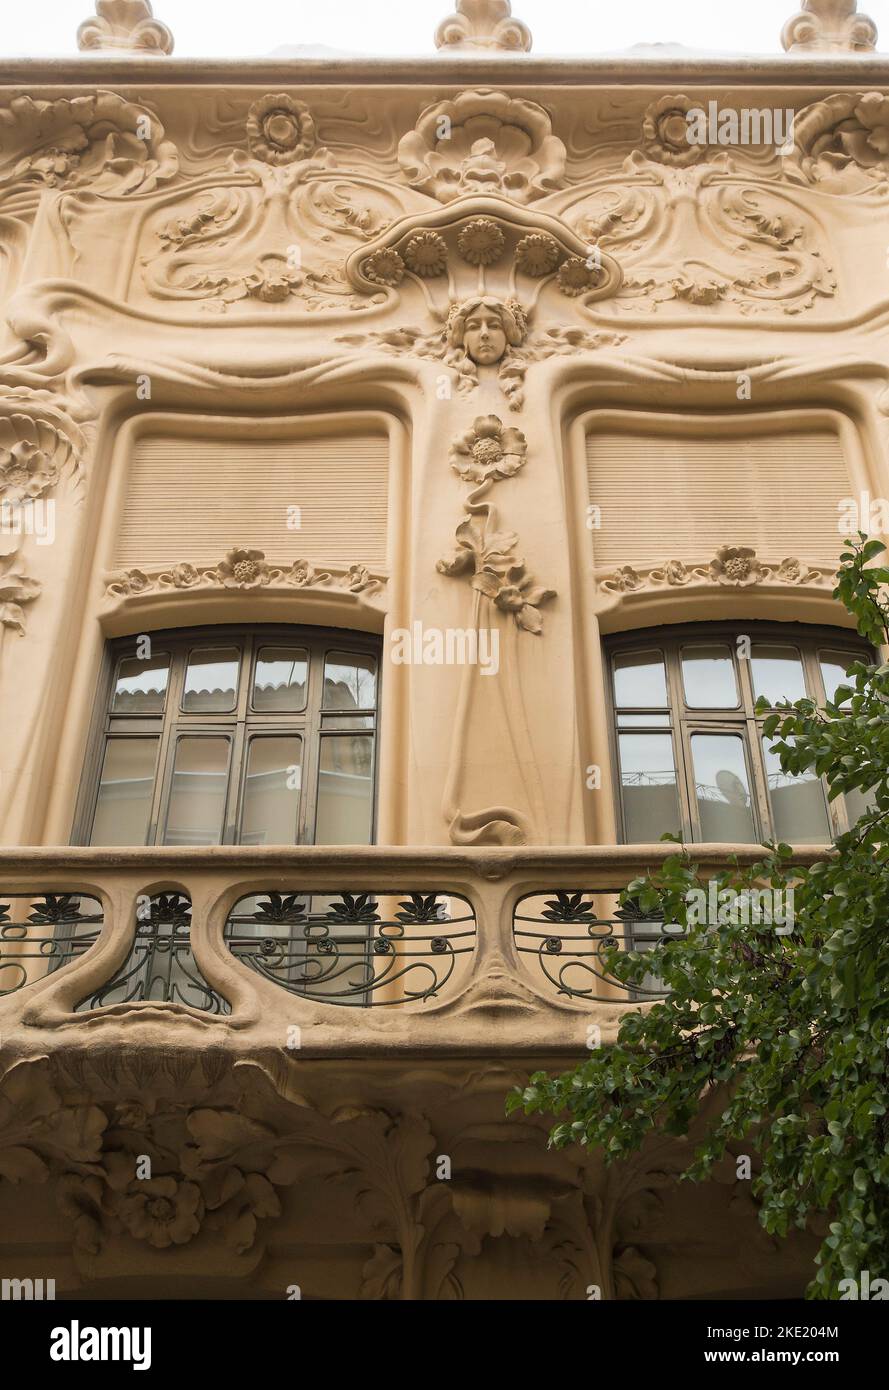 Dettagli architettonici art nouveau su edificio a Madrid, Spagna Foto Stock